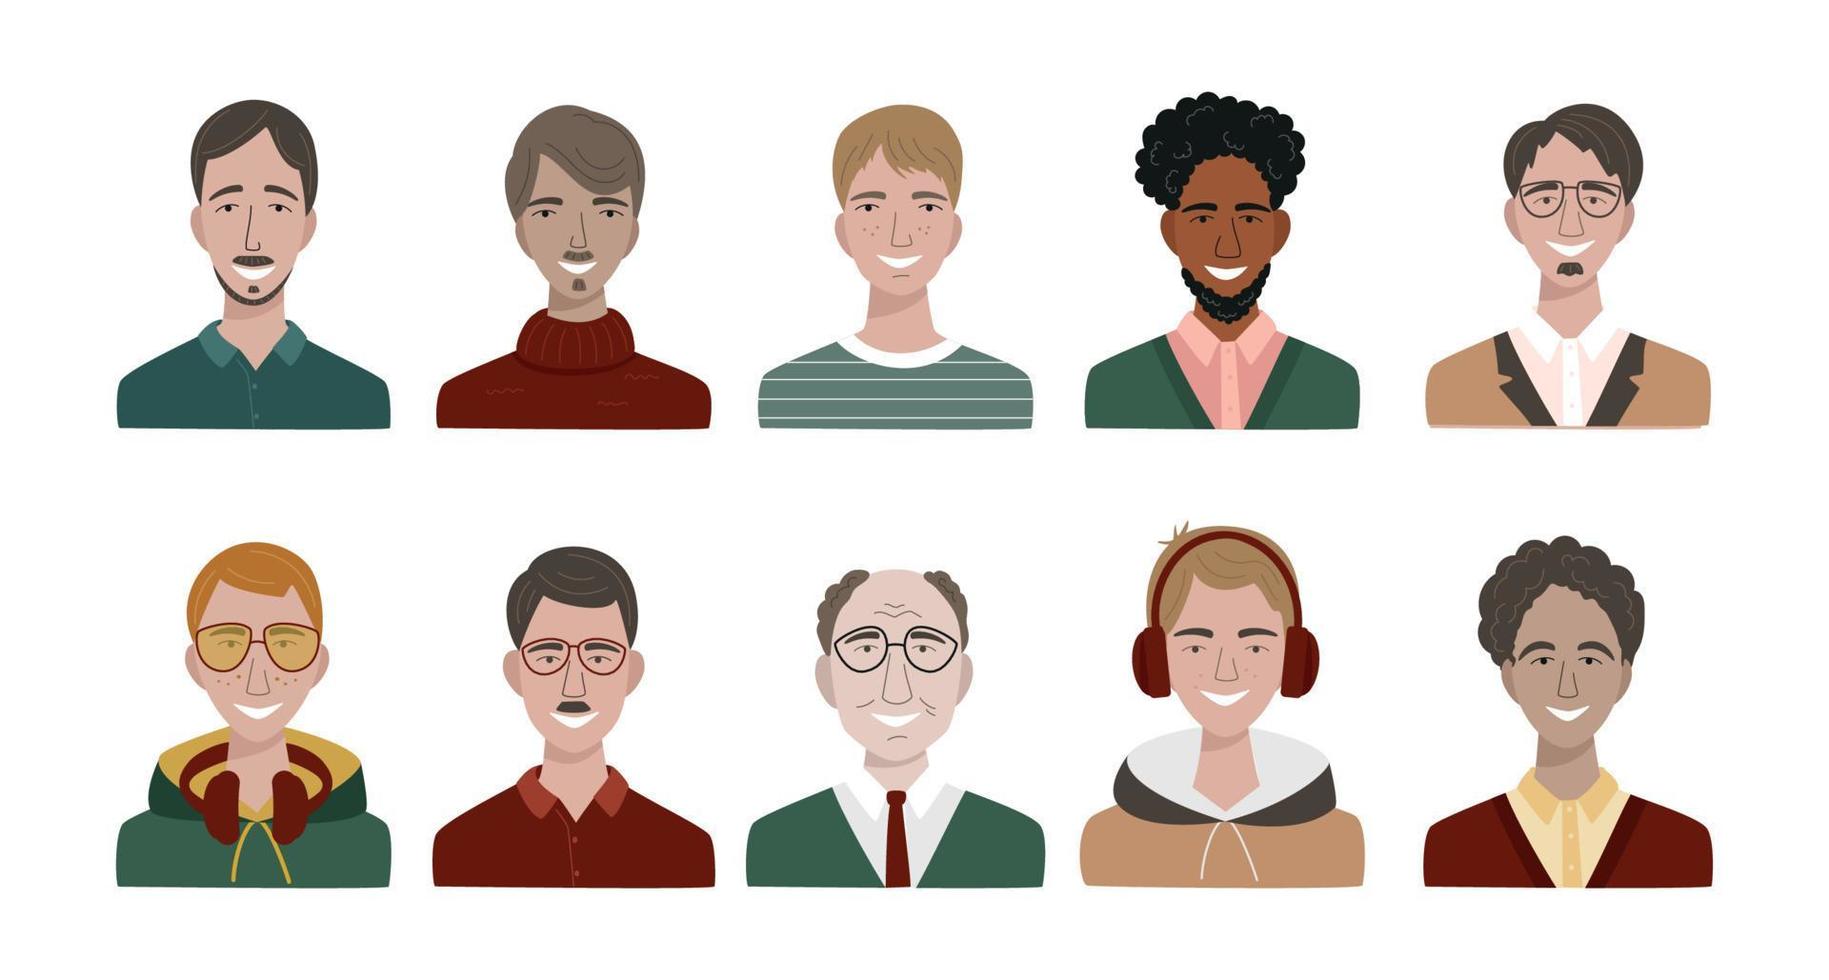 bundel van verschillende mannen avatars. set van kleurrijke gebruikersportretten. mannelijke karakters gezichten. lachende mannen avatar collectie. vectorillustratie in platte cartoonstijl vector